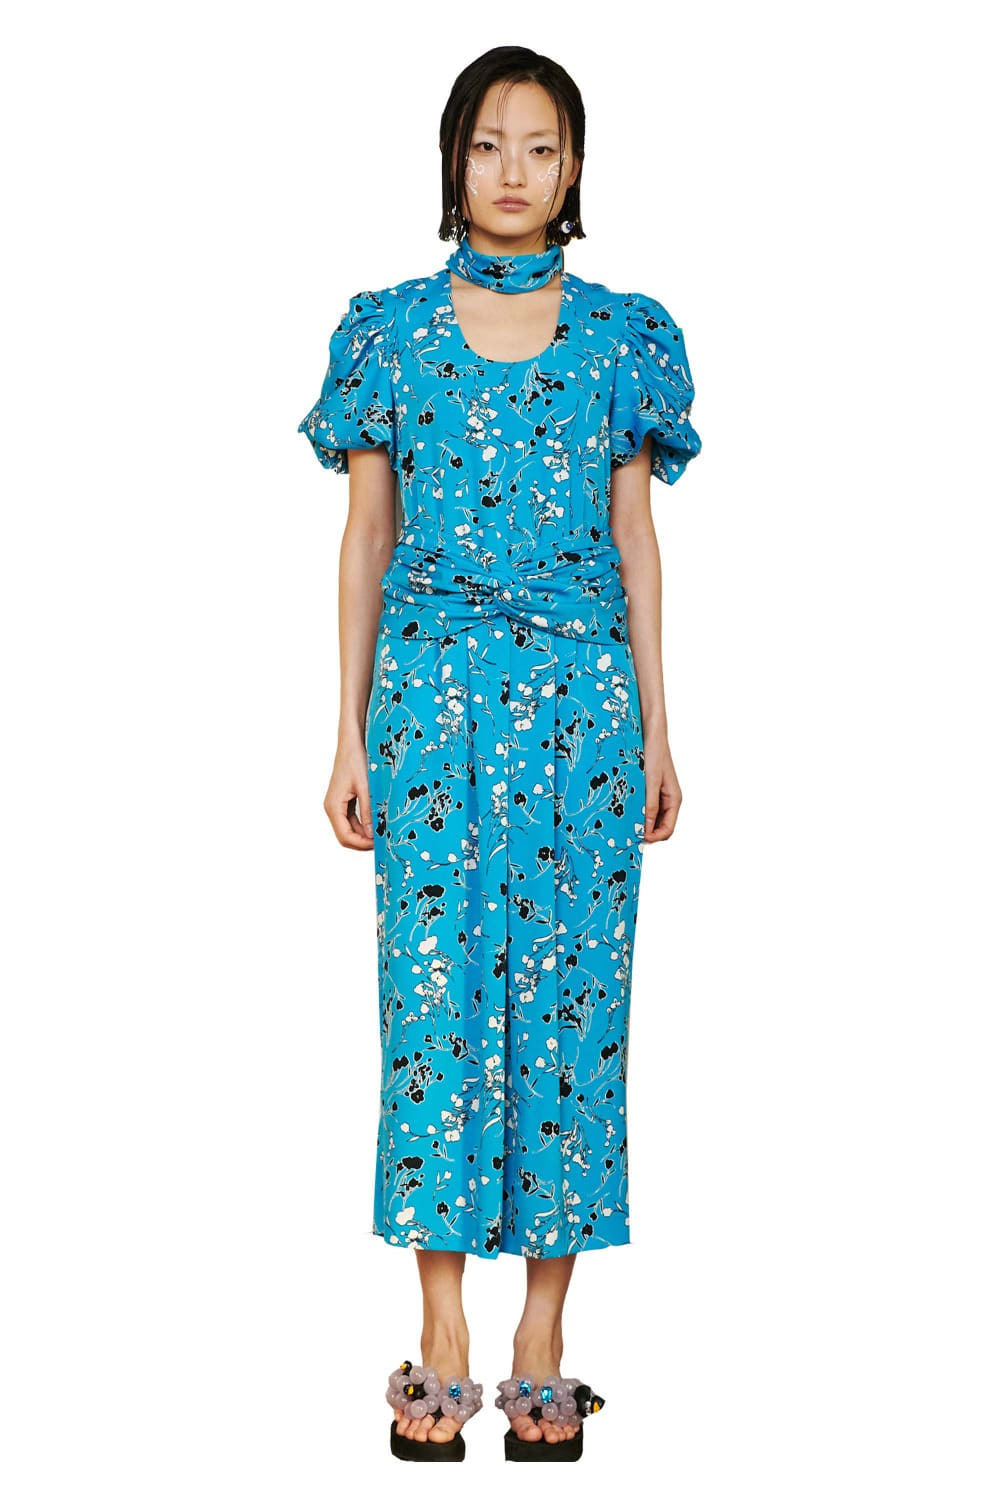 Fondest Flower Dress (Blue)